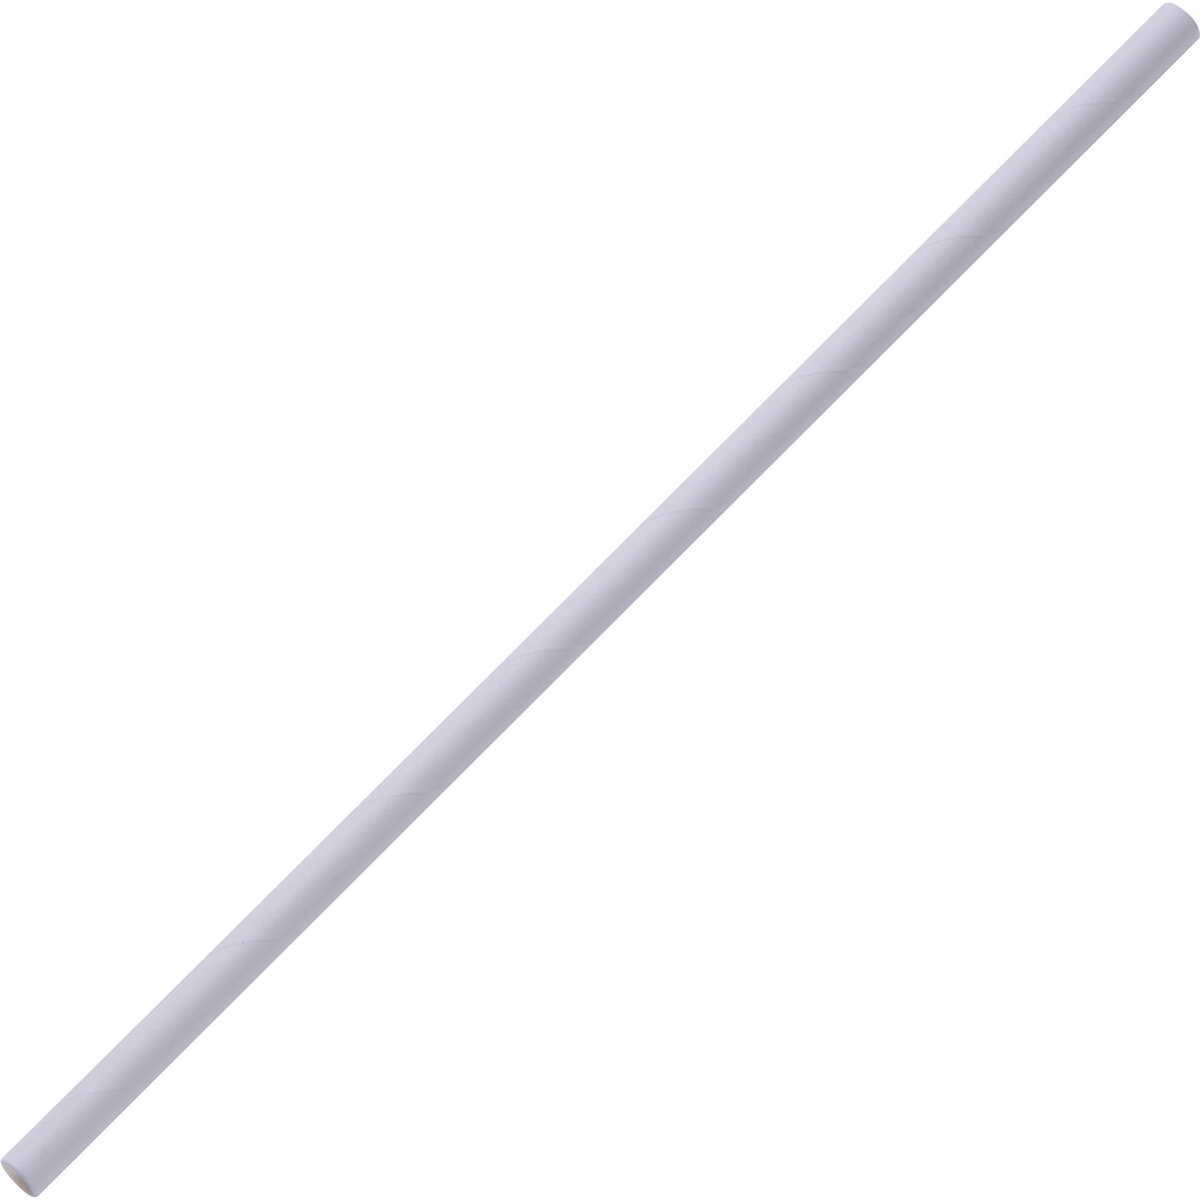 Gjo58946 Paper Straws, White - Box Of 500